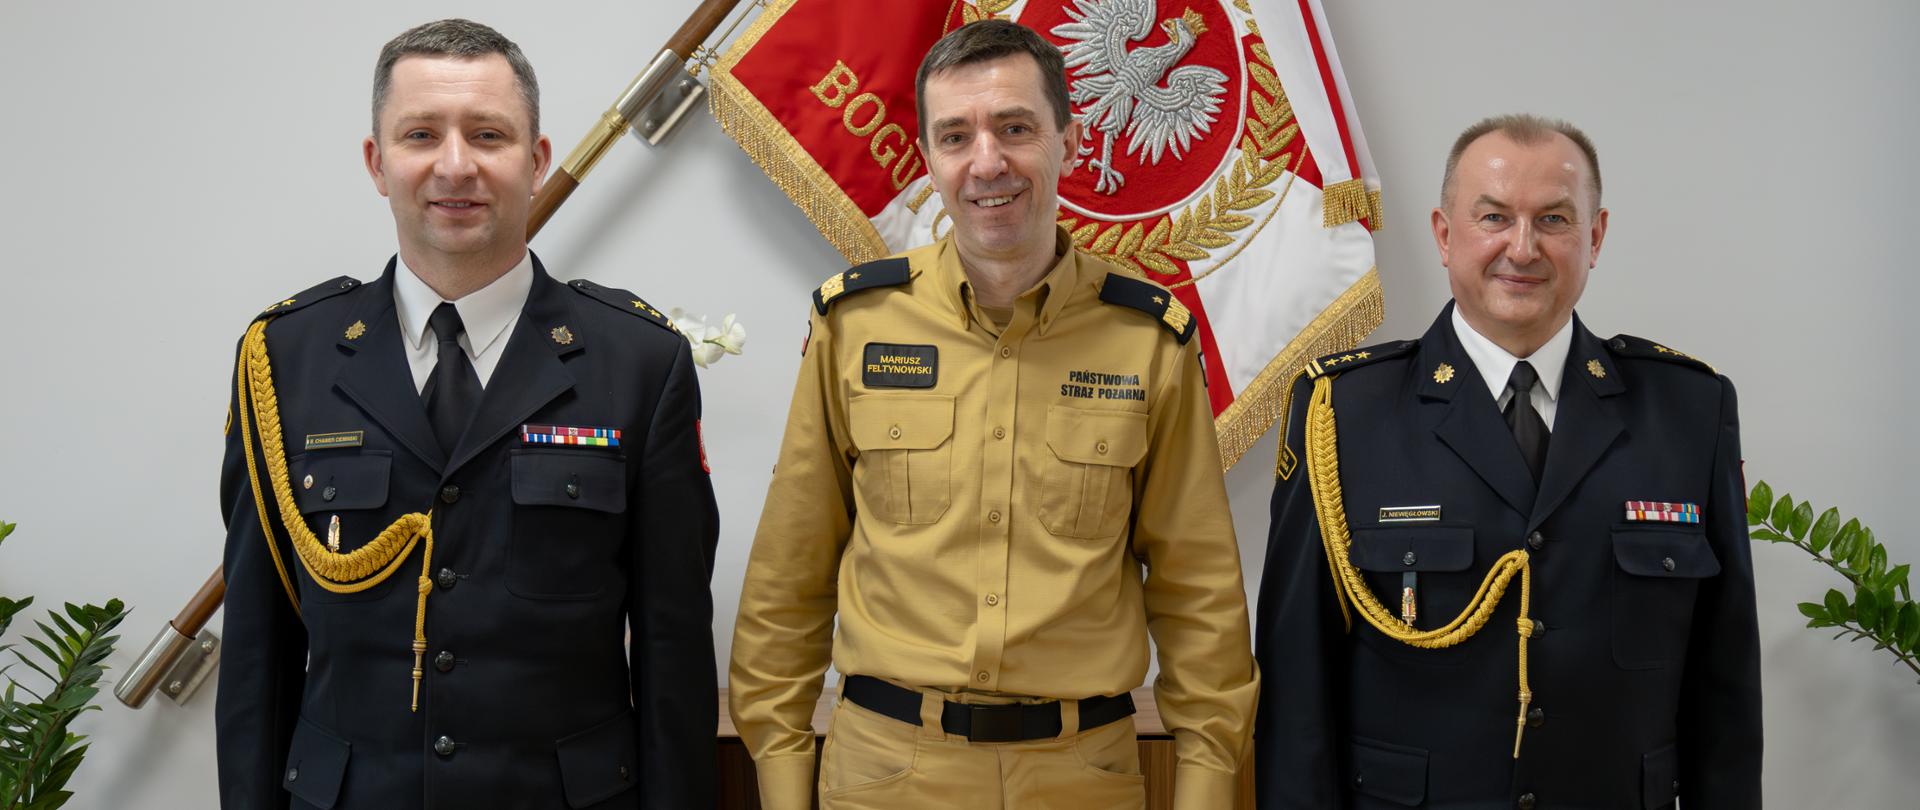 Zmiany na stanowiskach kierowniczych w Państwowej Straży Pożarnej - powierzenie pełnienia obowiązków zastępcy pomorskiego komendanta wojewódzkiego PSP